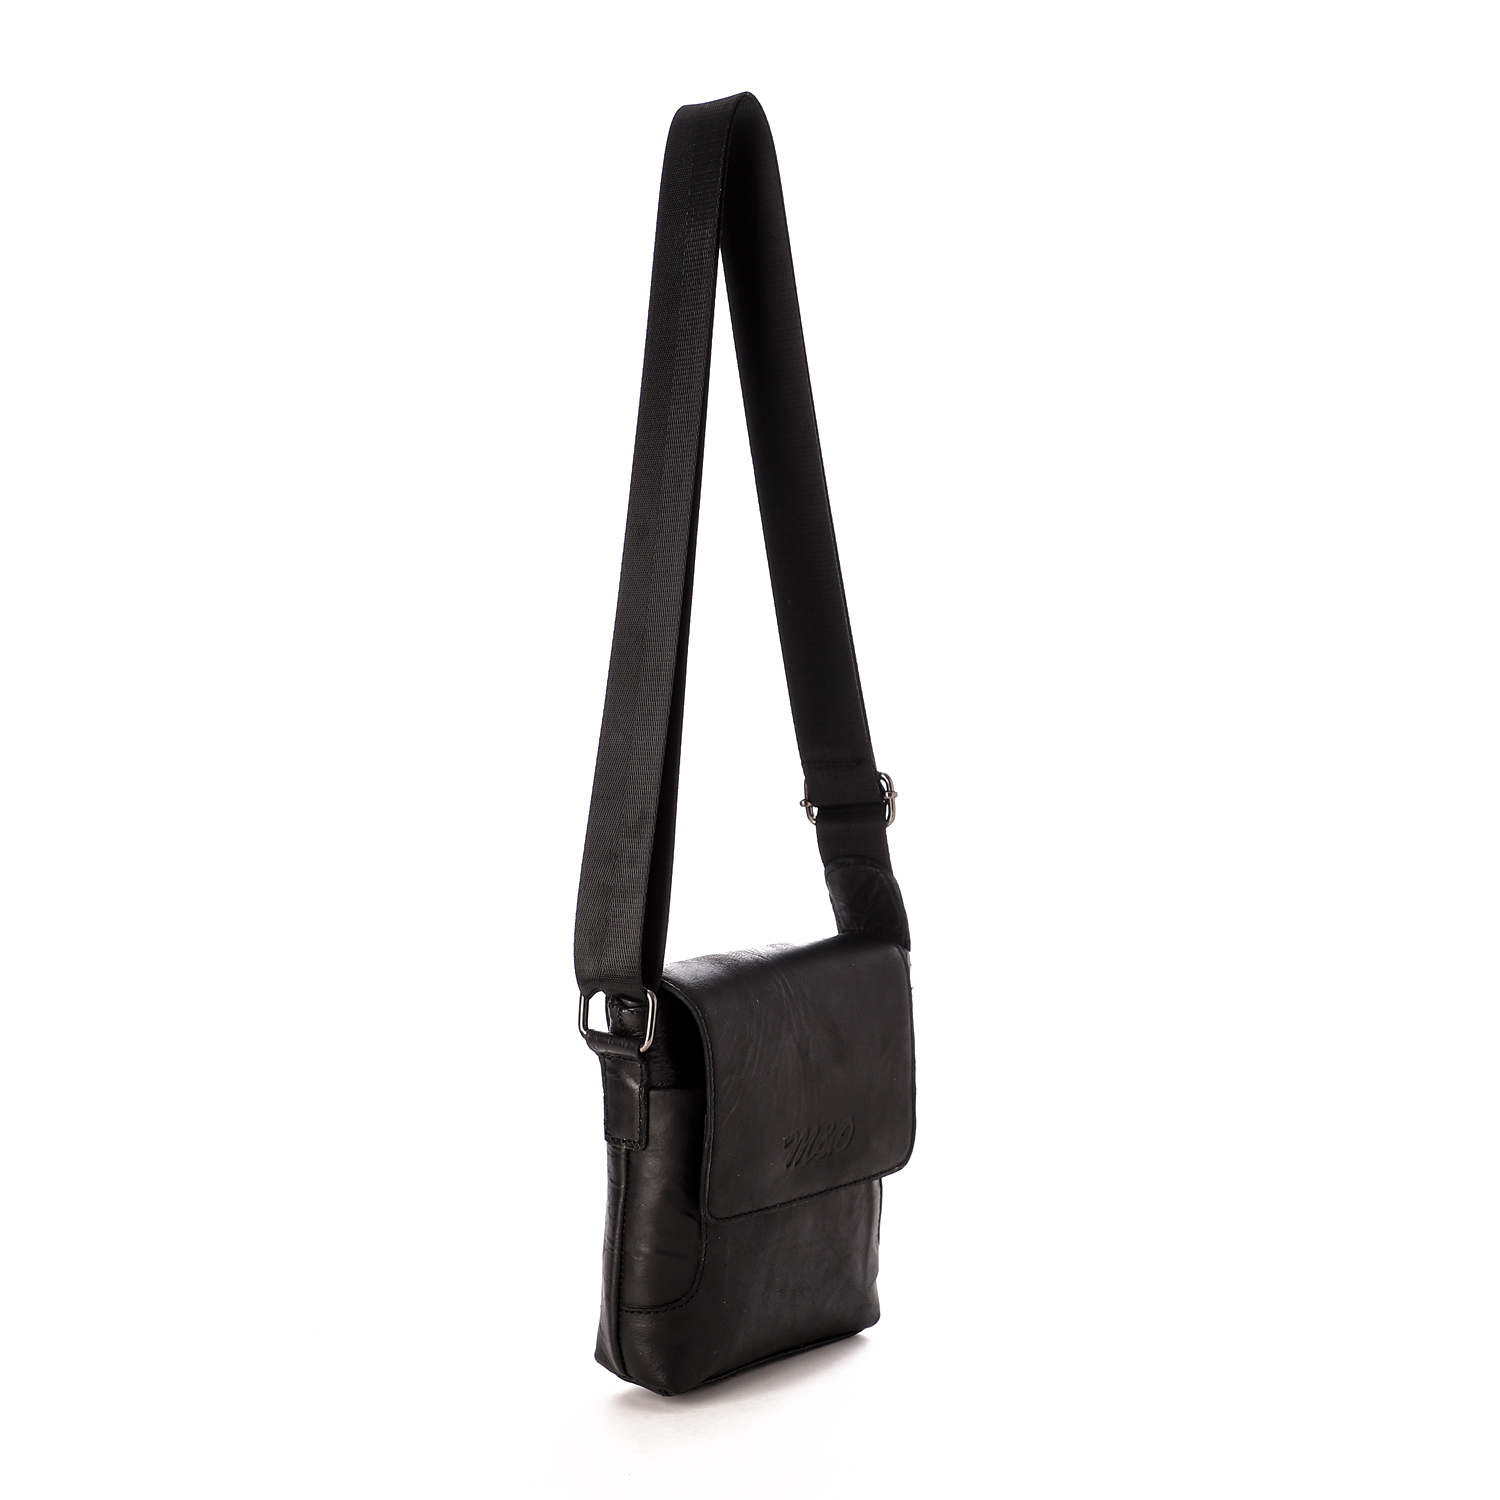  حقيبة كروس من أم أند أو جلد طبيعى صغيرة للرجال  -أسود